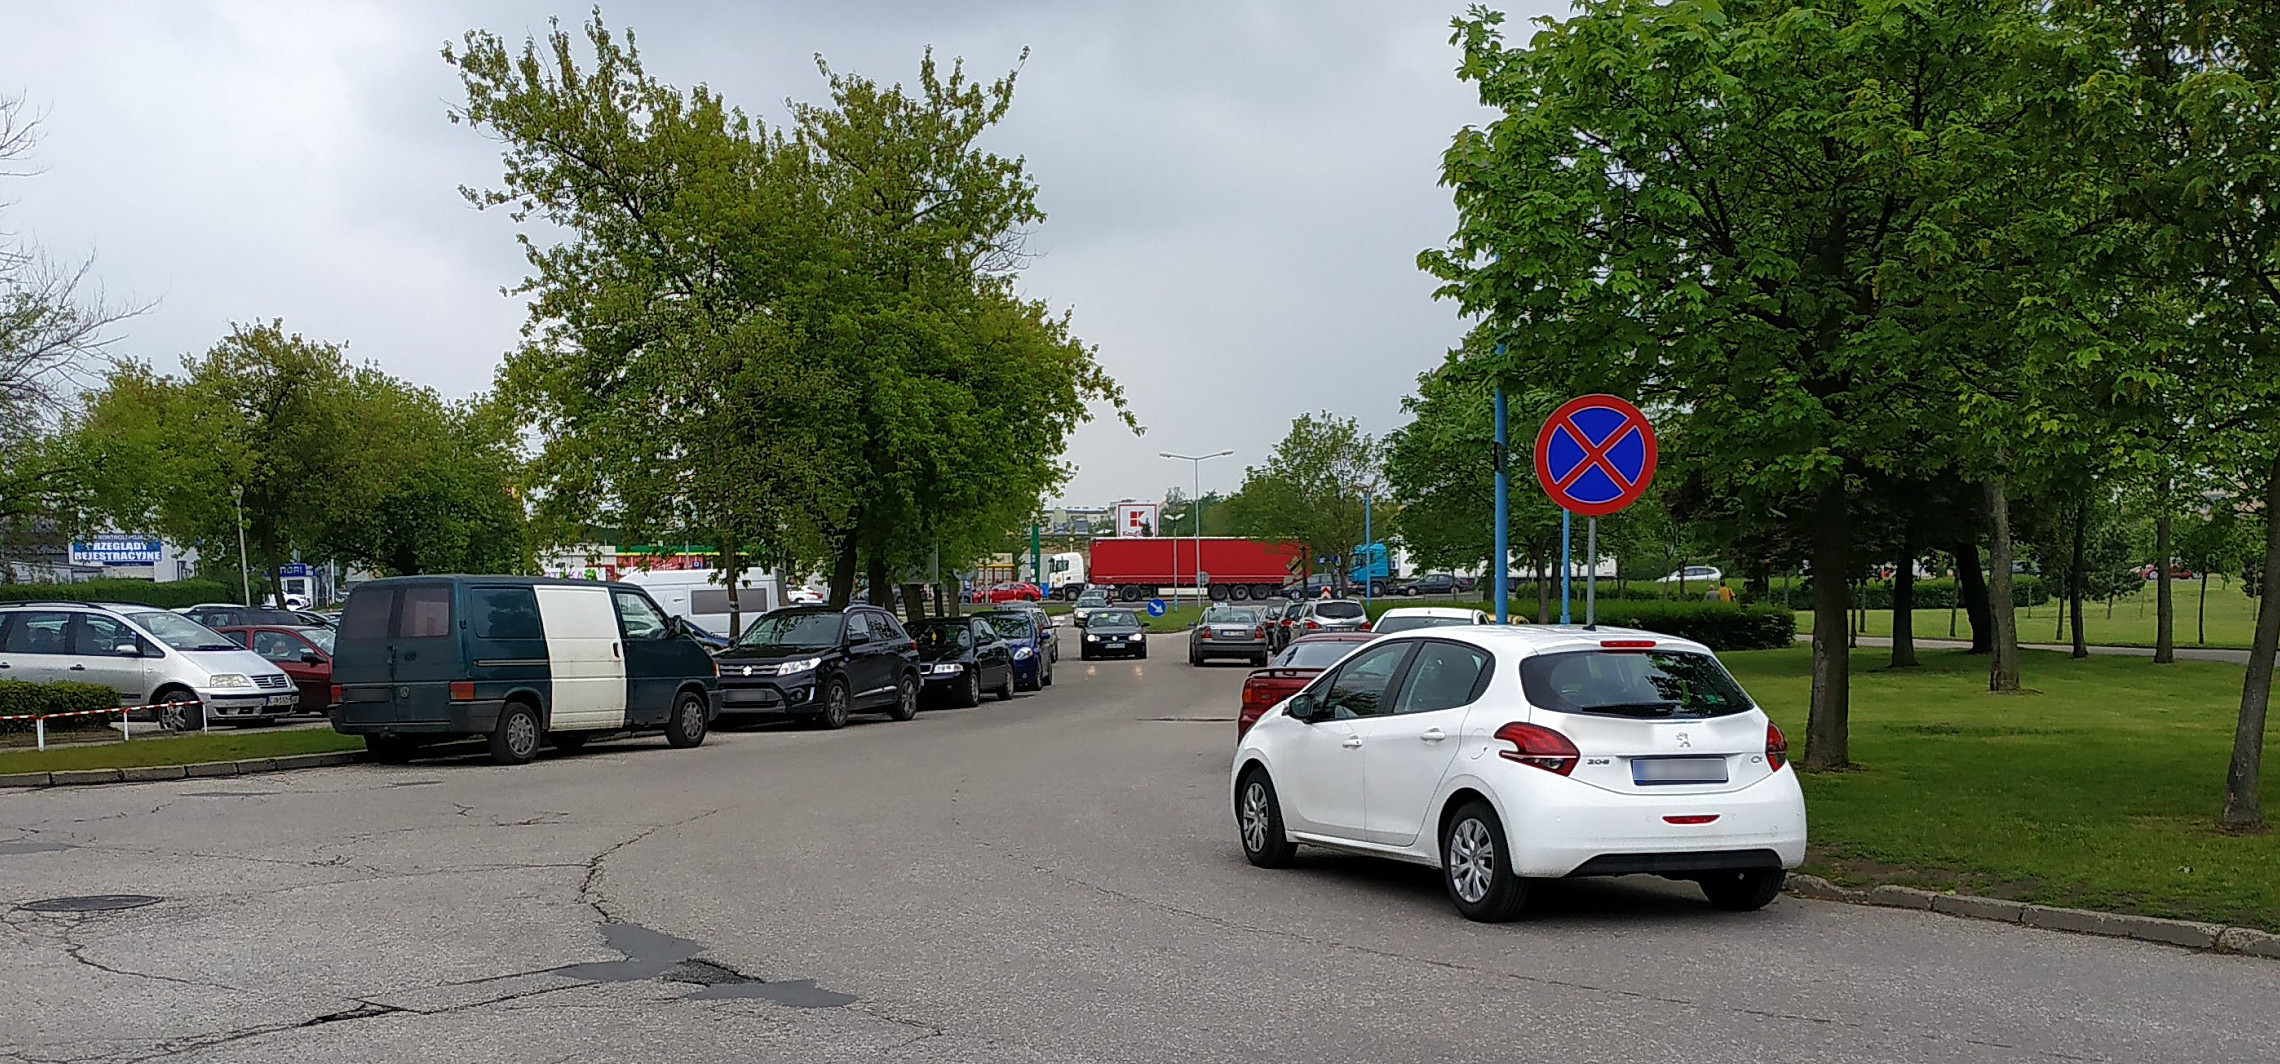 Inowrocław - Większy parking przy szpitalu? Mamy złe wieści